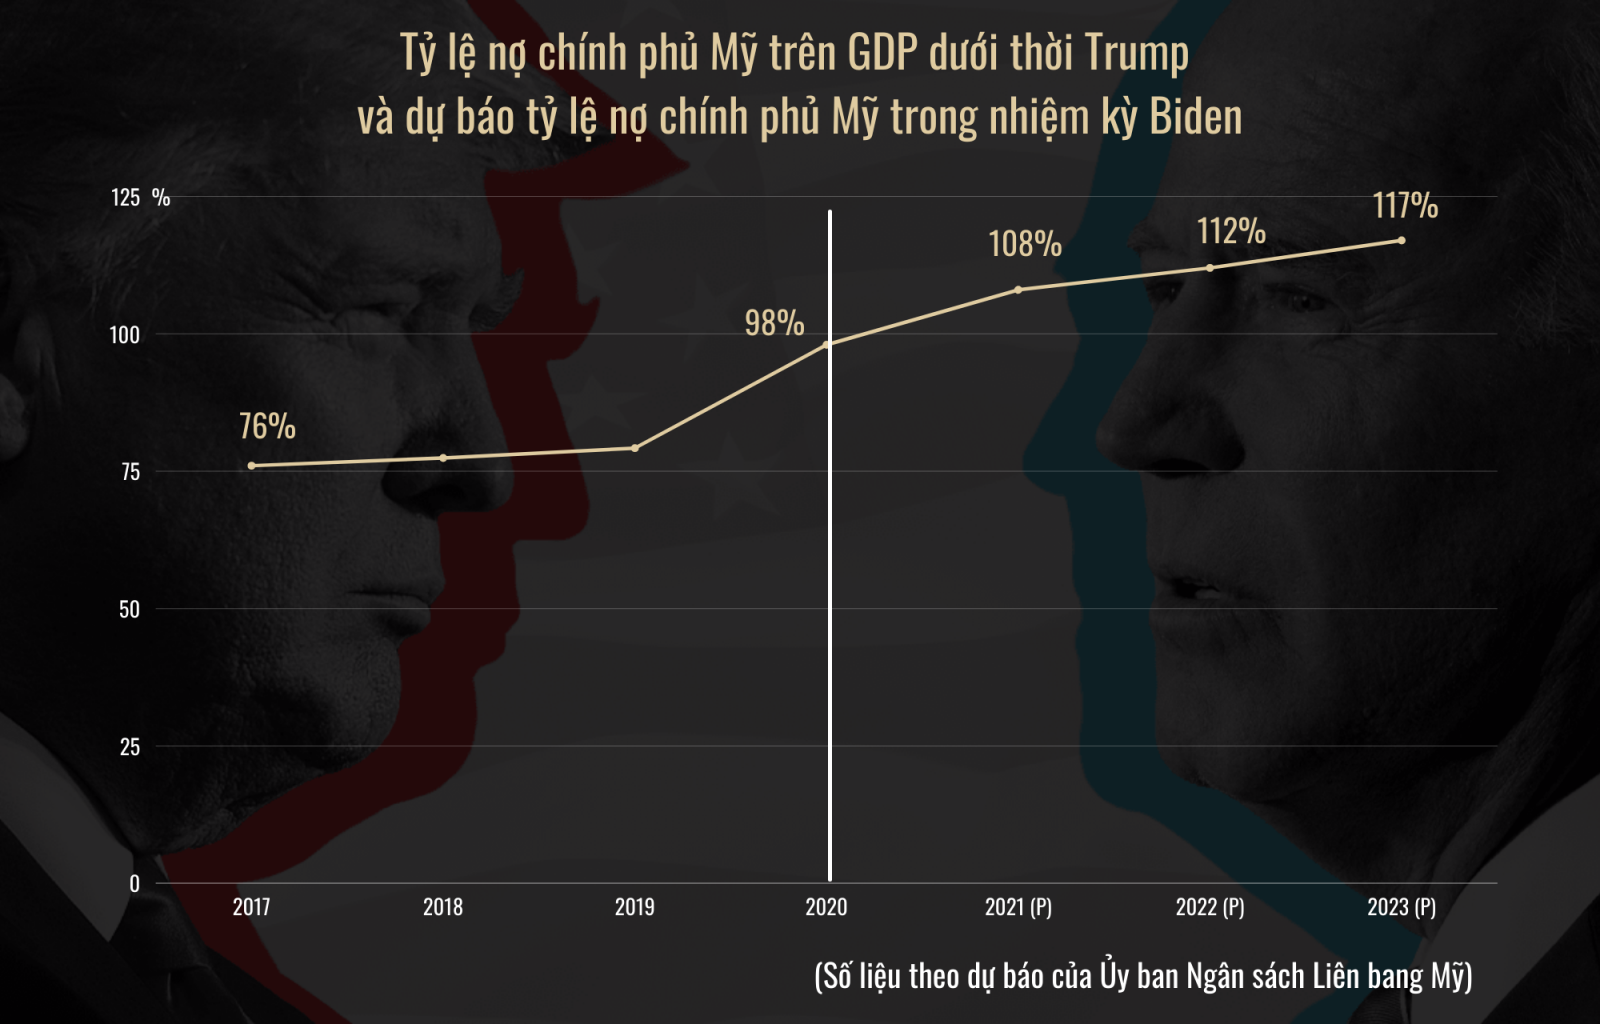 Liệu Joe Biden có hạn chế được núi nợ chính phủ đang tăng nhanh?